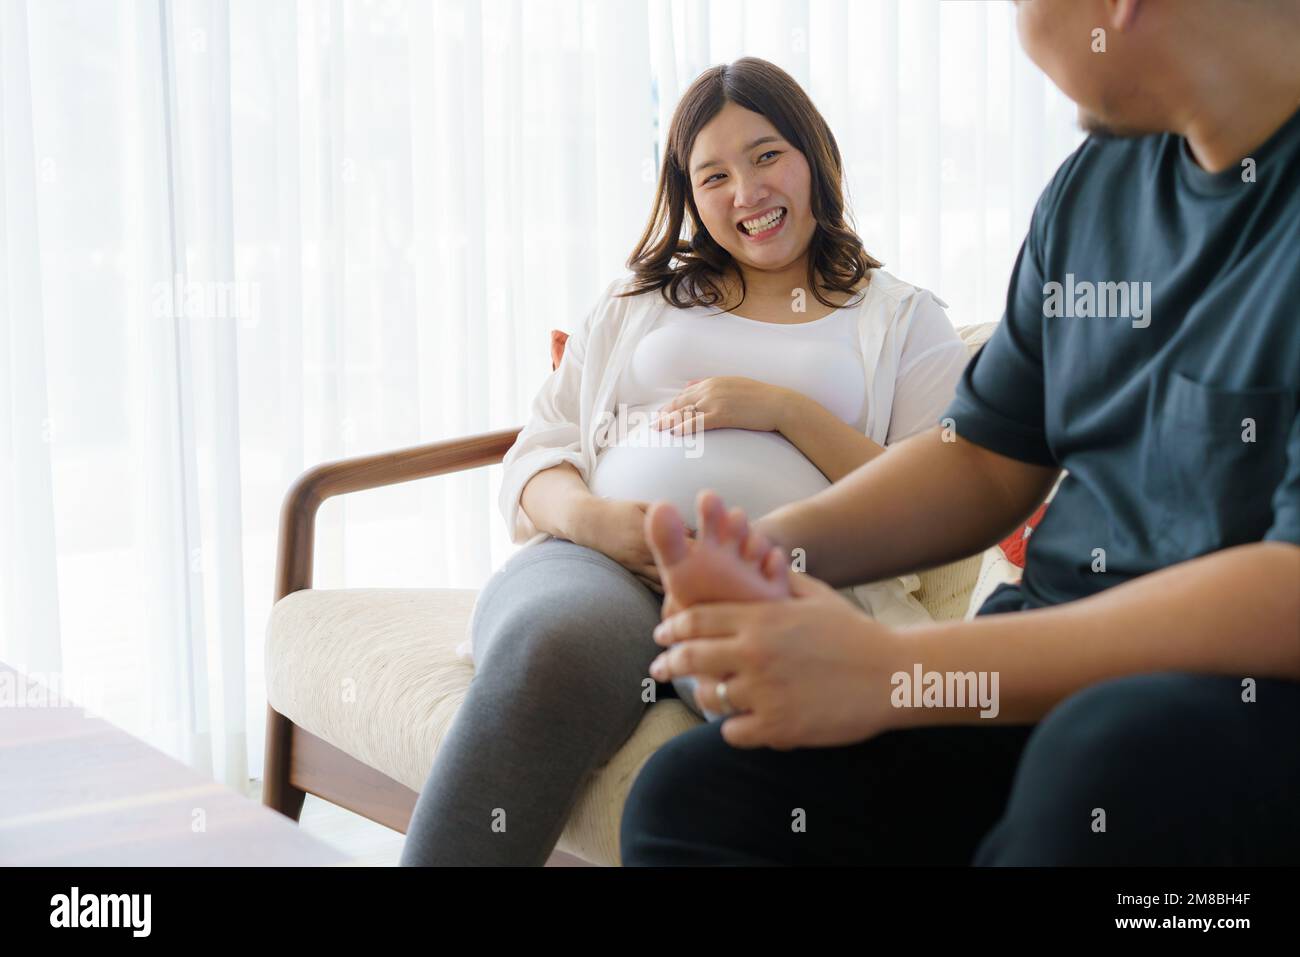 Der asiatische Ehemann massiert die Füße der schwangeren Frau im Wohnzimmer des Hauses. Glückliche schwangere Familie. Stockfoto